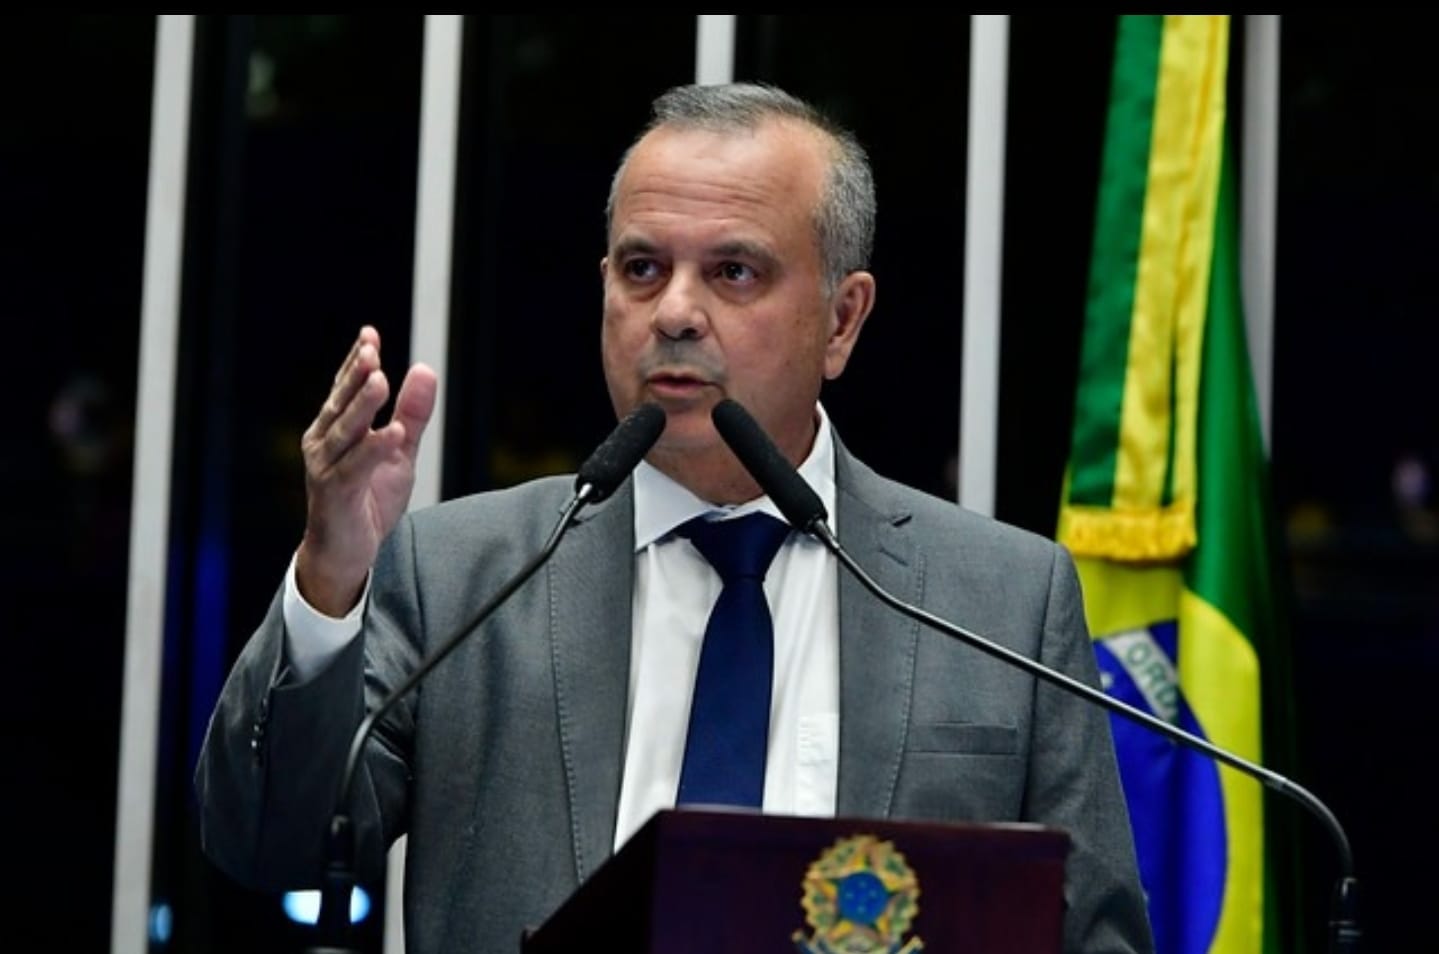 Ministro de Lula "intimida e censura" jornalista, diz senador Rogério Marinho